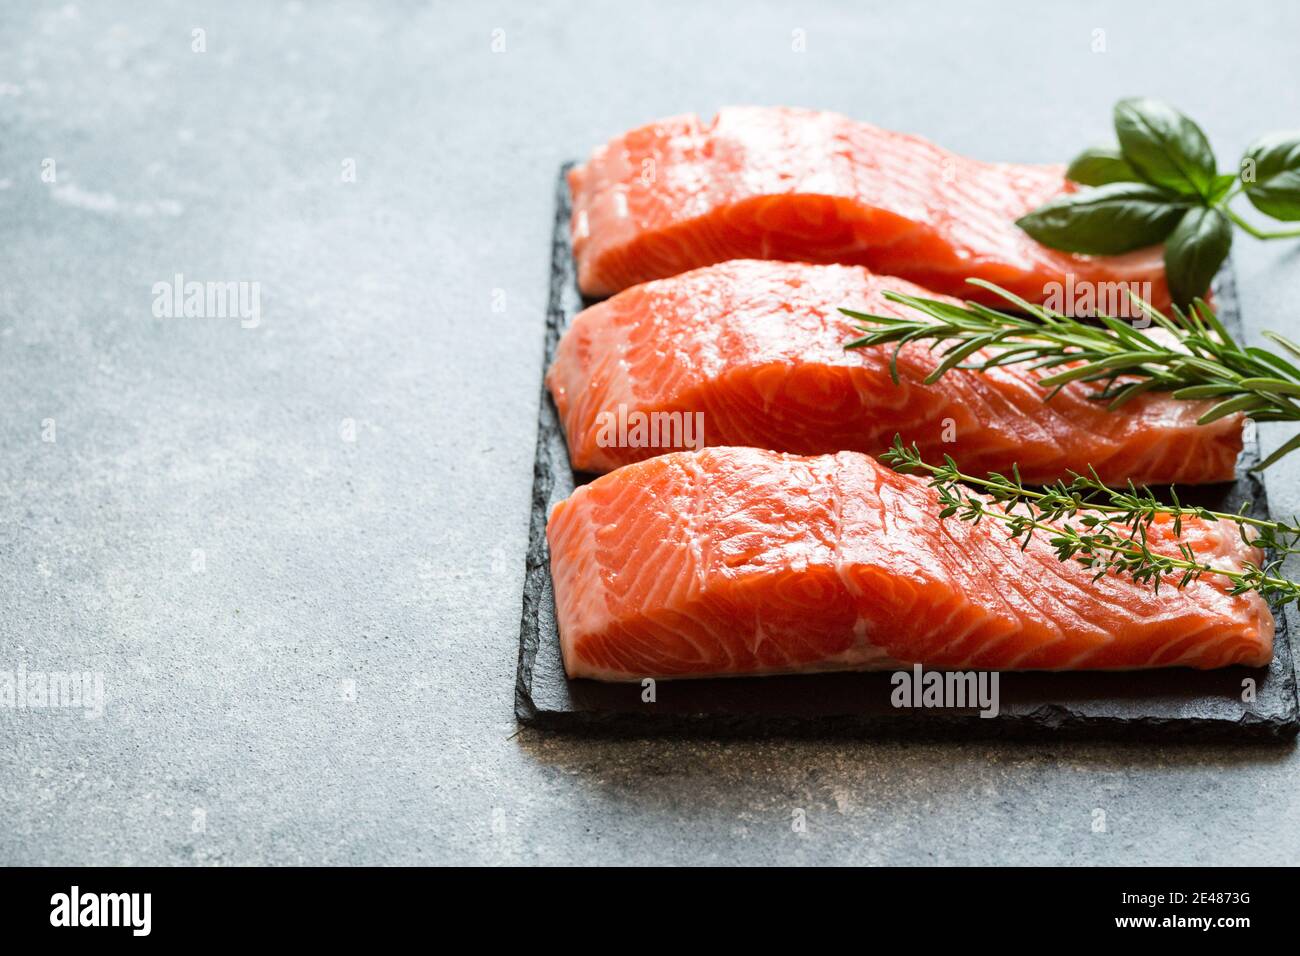 Salmone. Filetto di salmone fresco crudo con ingredienti da cucina, erbe e limone. Primo piano. Cibo sano, dieta o concetto di cucina Foto Stock